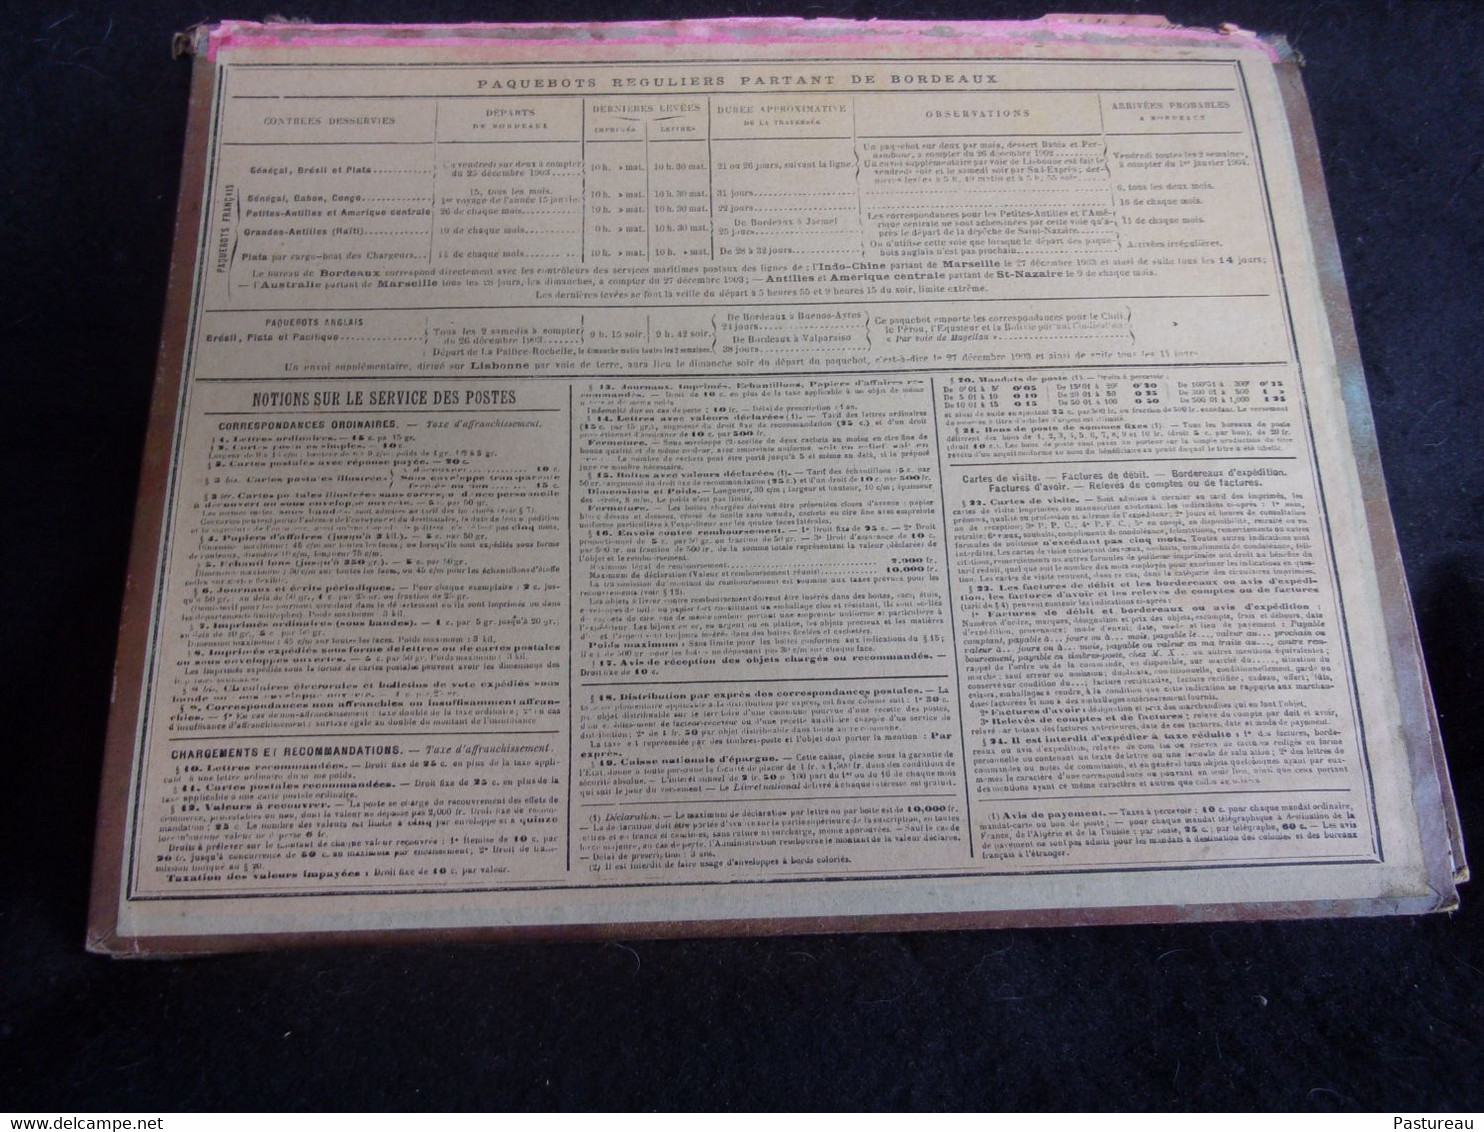 Almanach des Postes .Calendrier 1904. Département de la Gironde.Imprimerie Oberthür à Rennes.Cueillette des Poires .8 sc